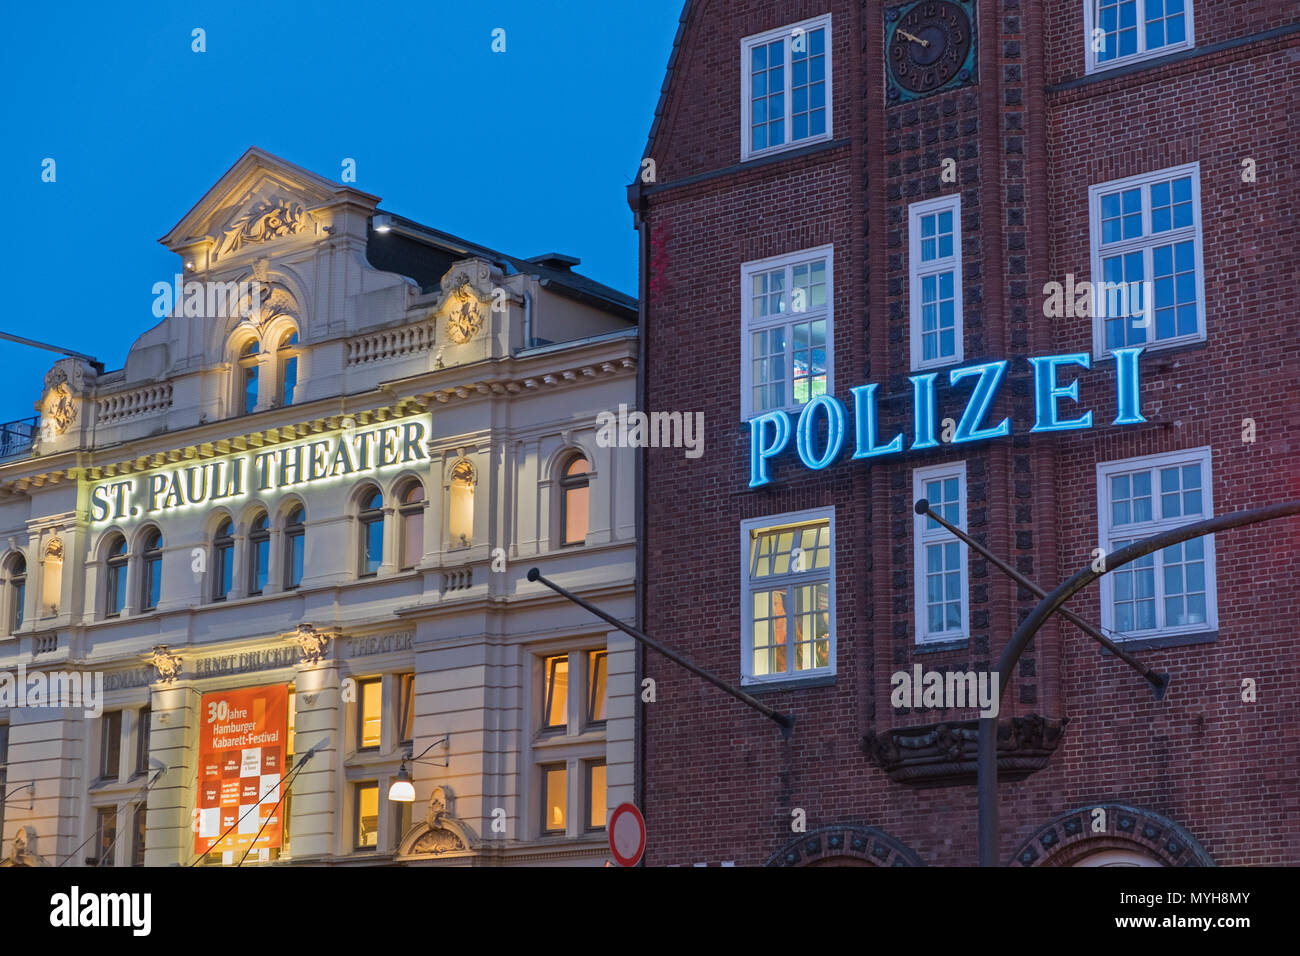 Théâtre St Pauli et commissariat de police de Reeperbahn Hambourg Allemagne Banque D'Images